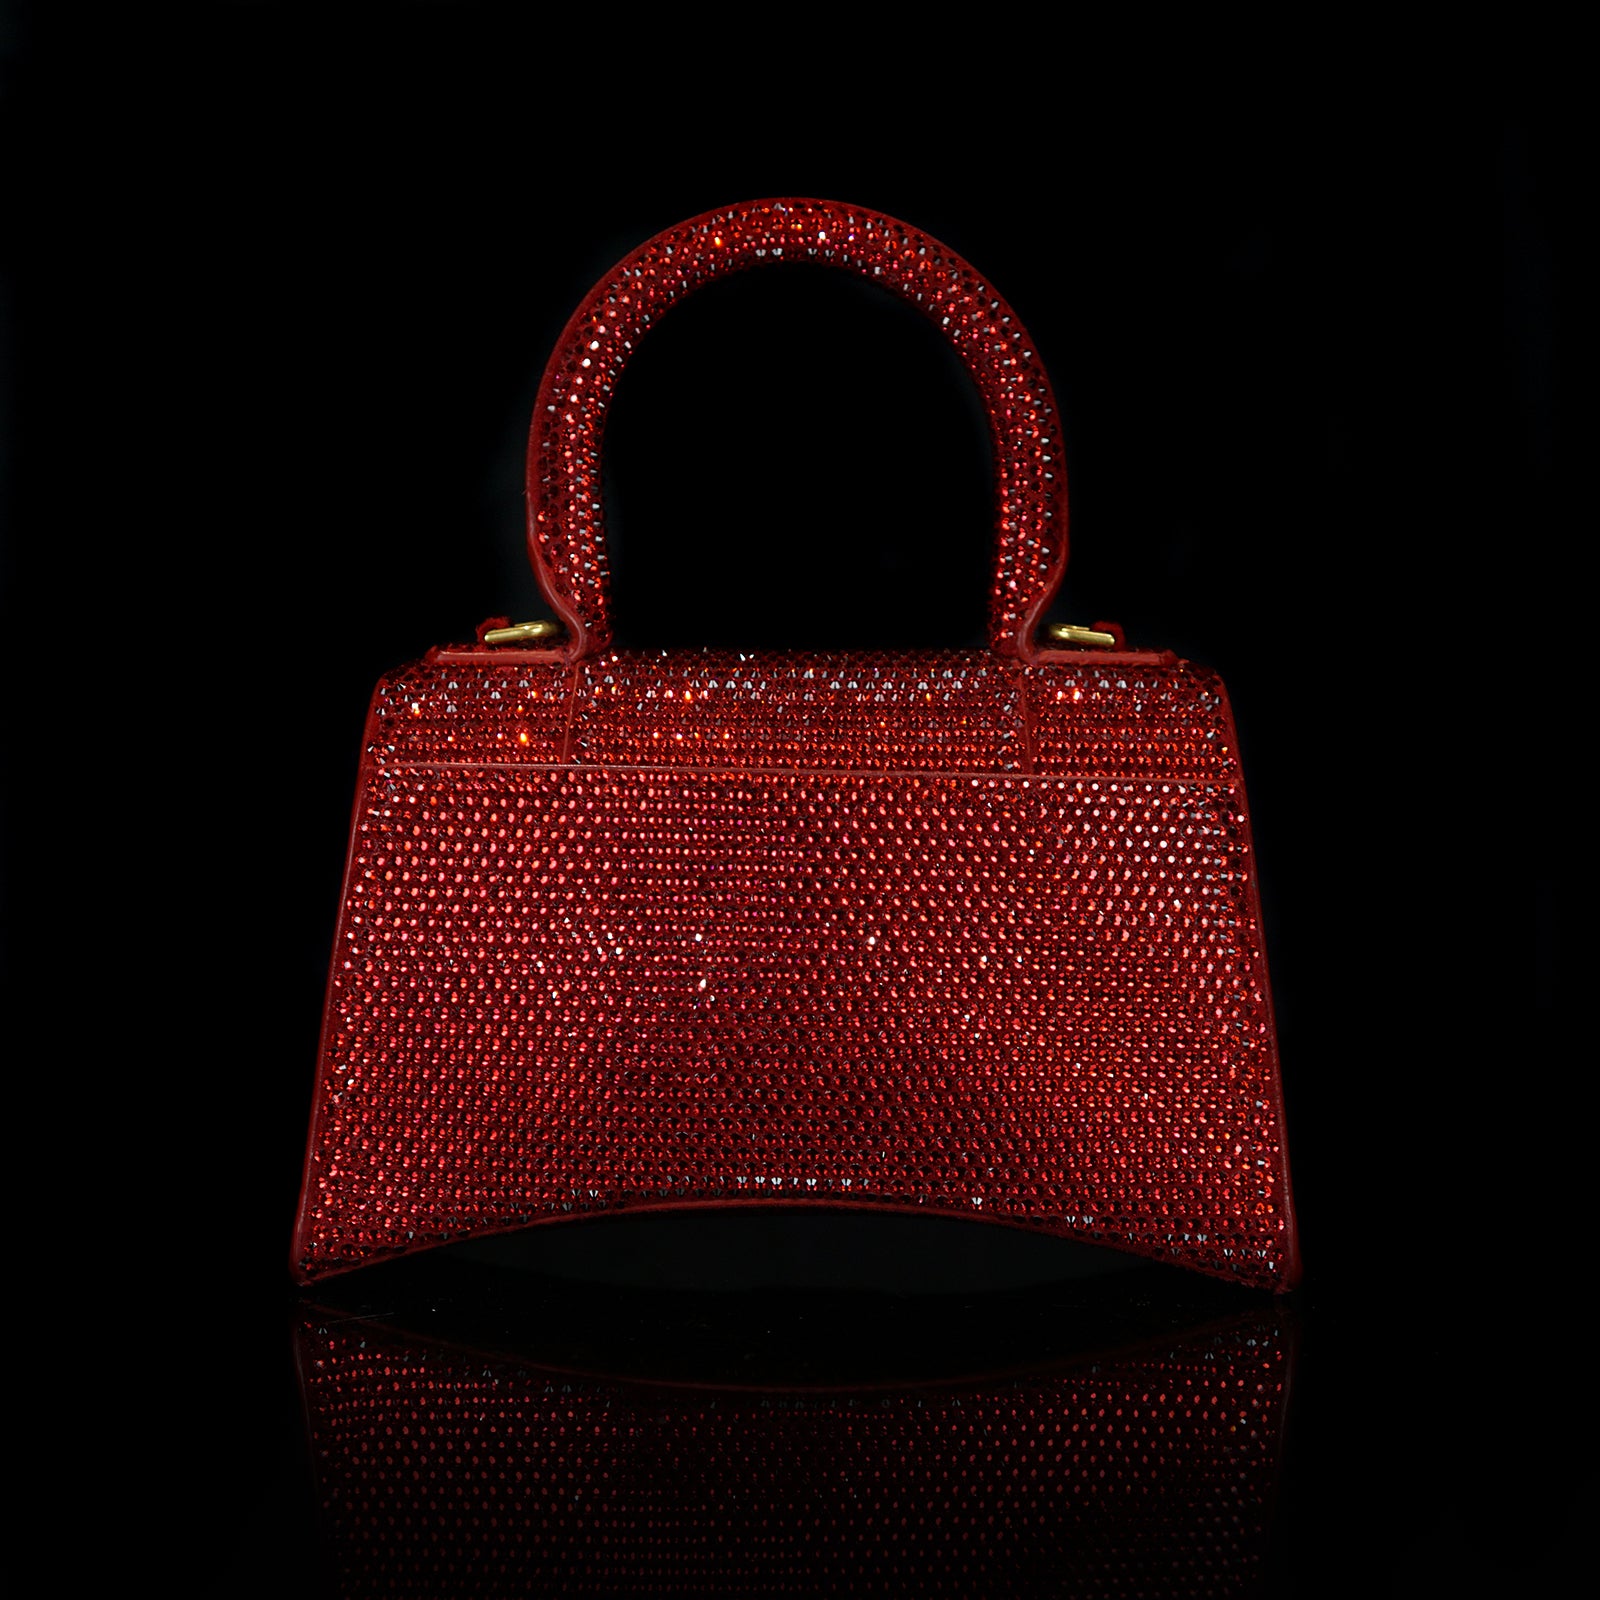 hourglass xs handbag with rhinestones